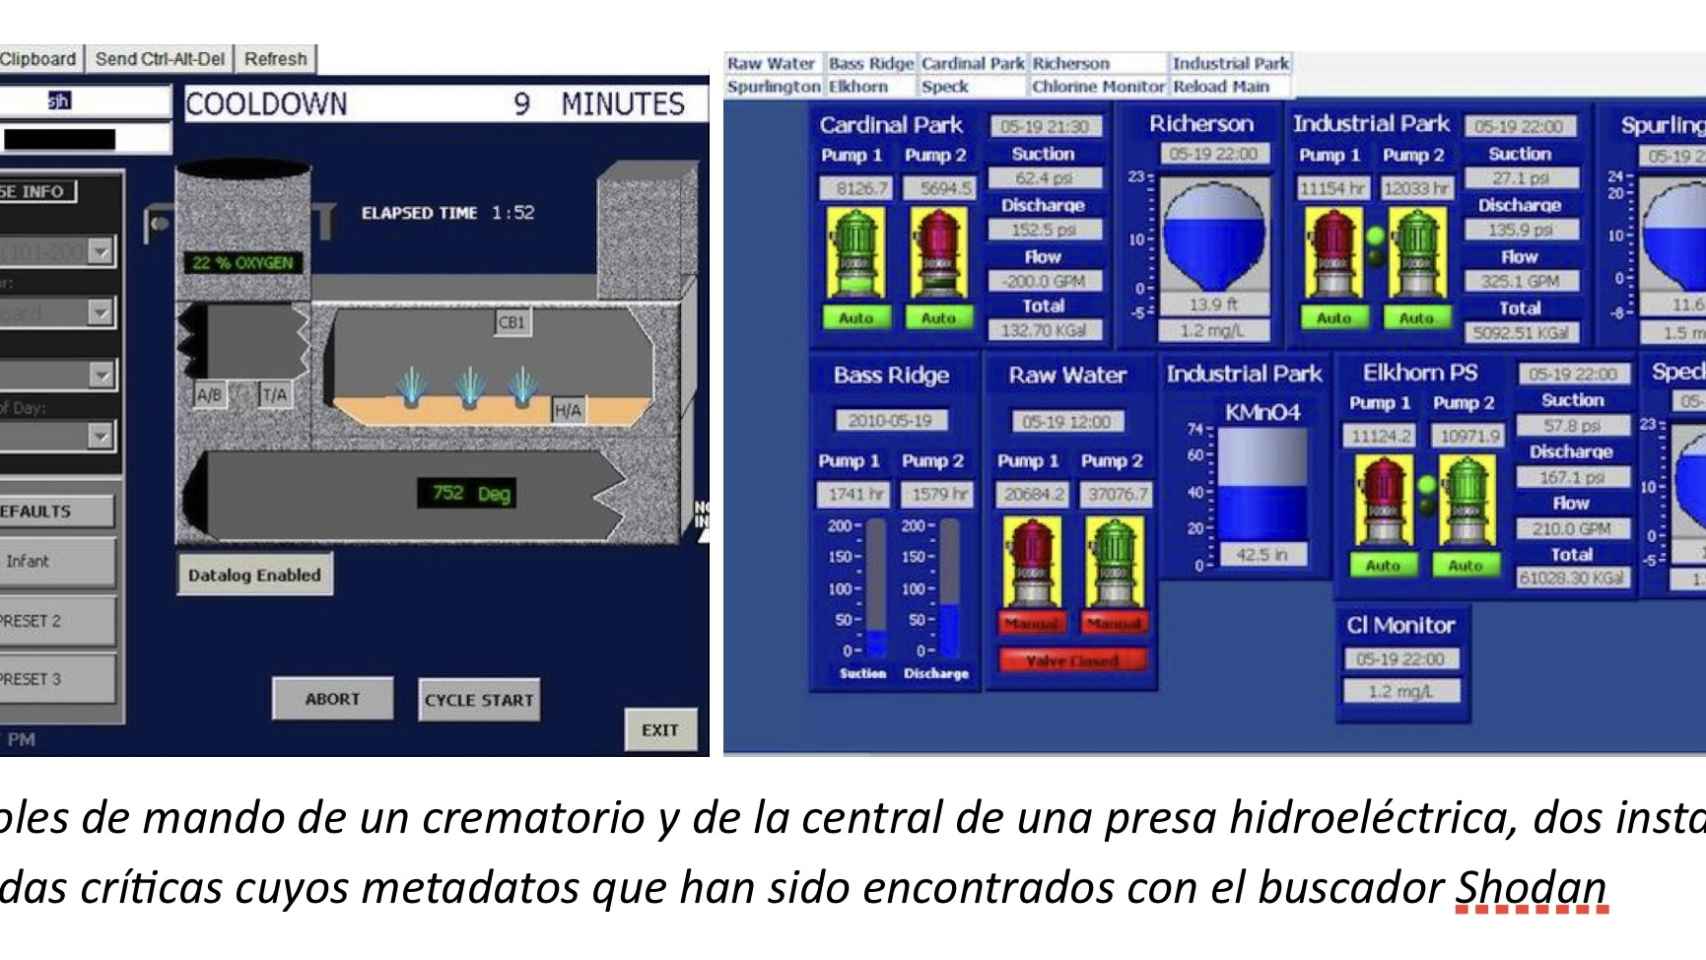 Los controles de mando de un crematorio y de la central de una presa hidroeléctrica.